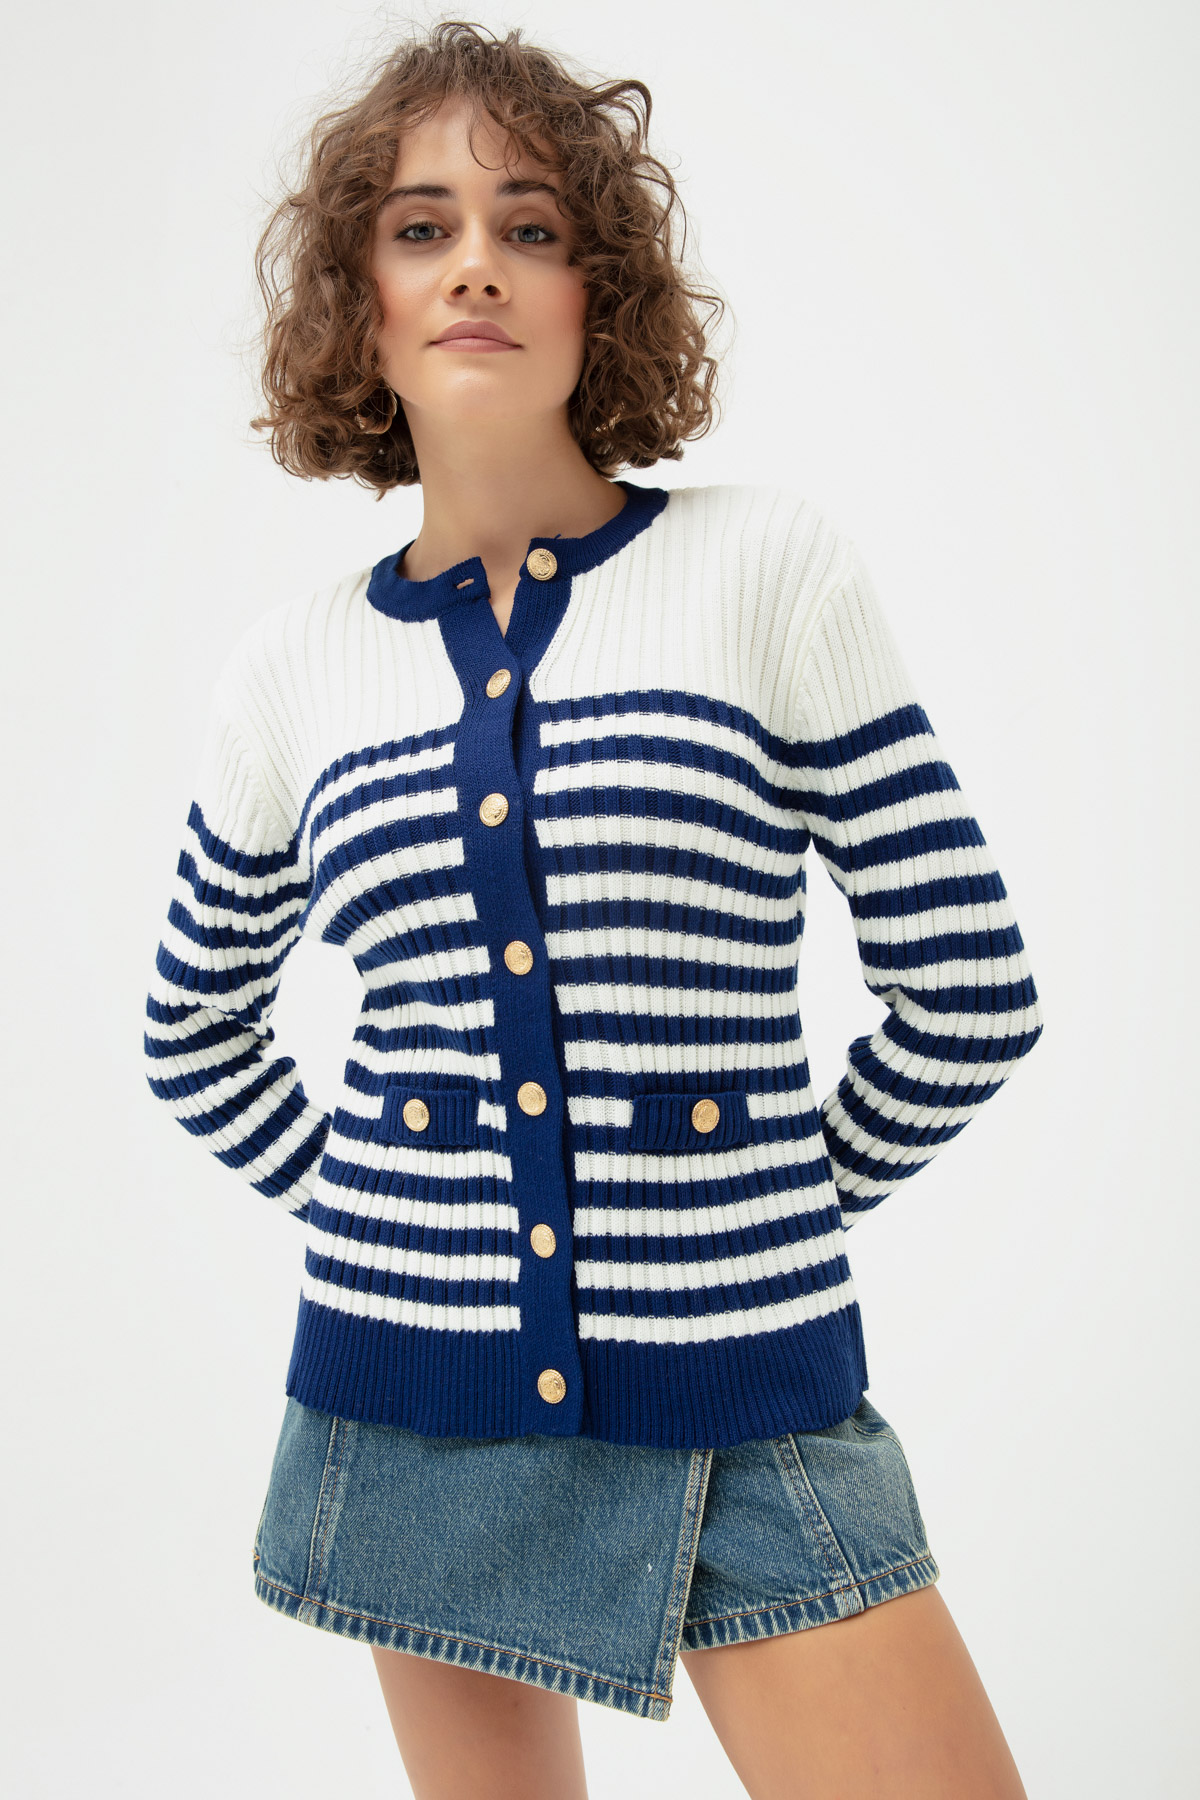 Women's Navy Blue4 Striped Knitwear Cardigan